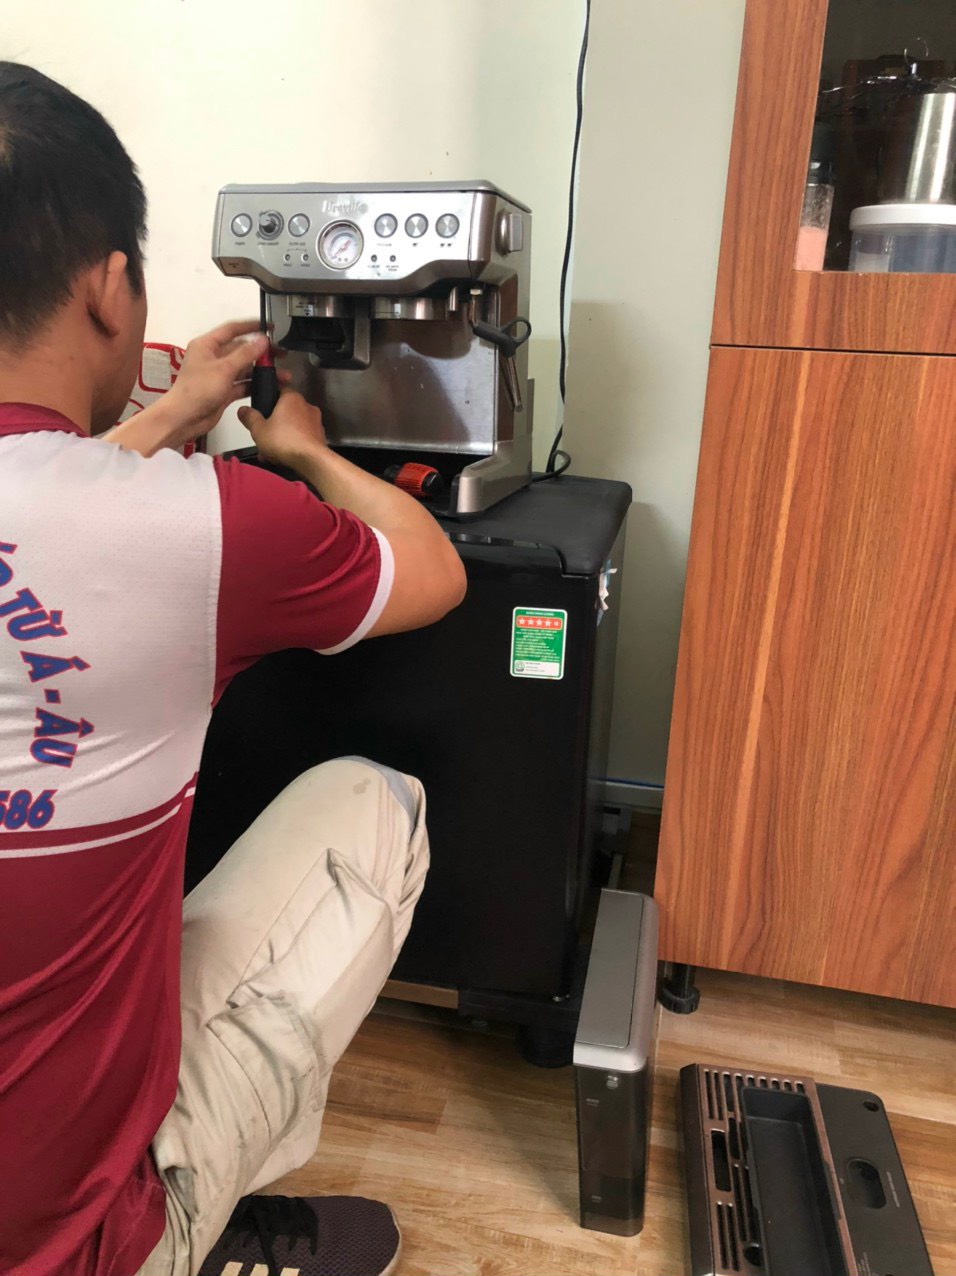 z4308034885452 c233c75645e990857aca67128a7f48d9 - Sửa máy cafe Breville máy kêu to chính hãng tại Sài Gòn